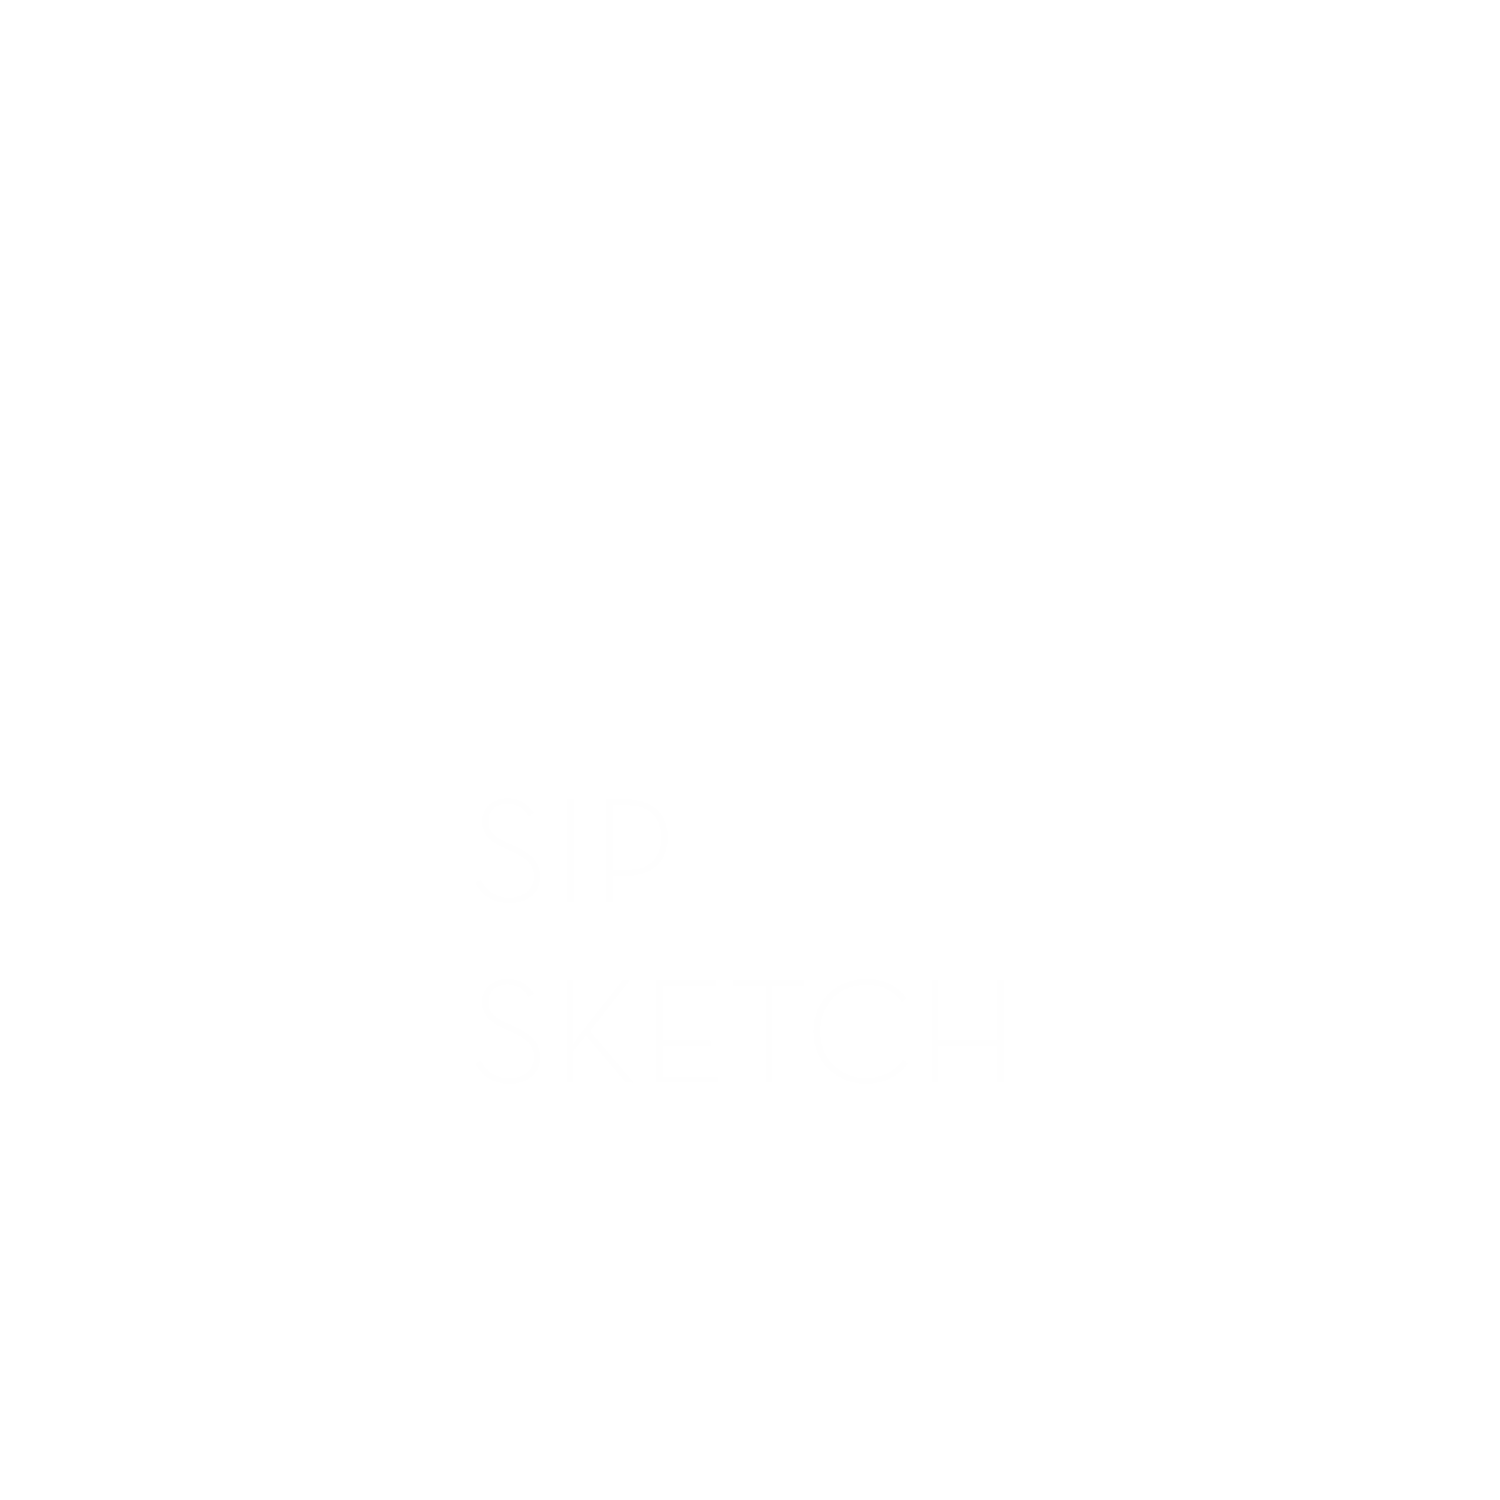 Sip Sketch